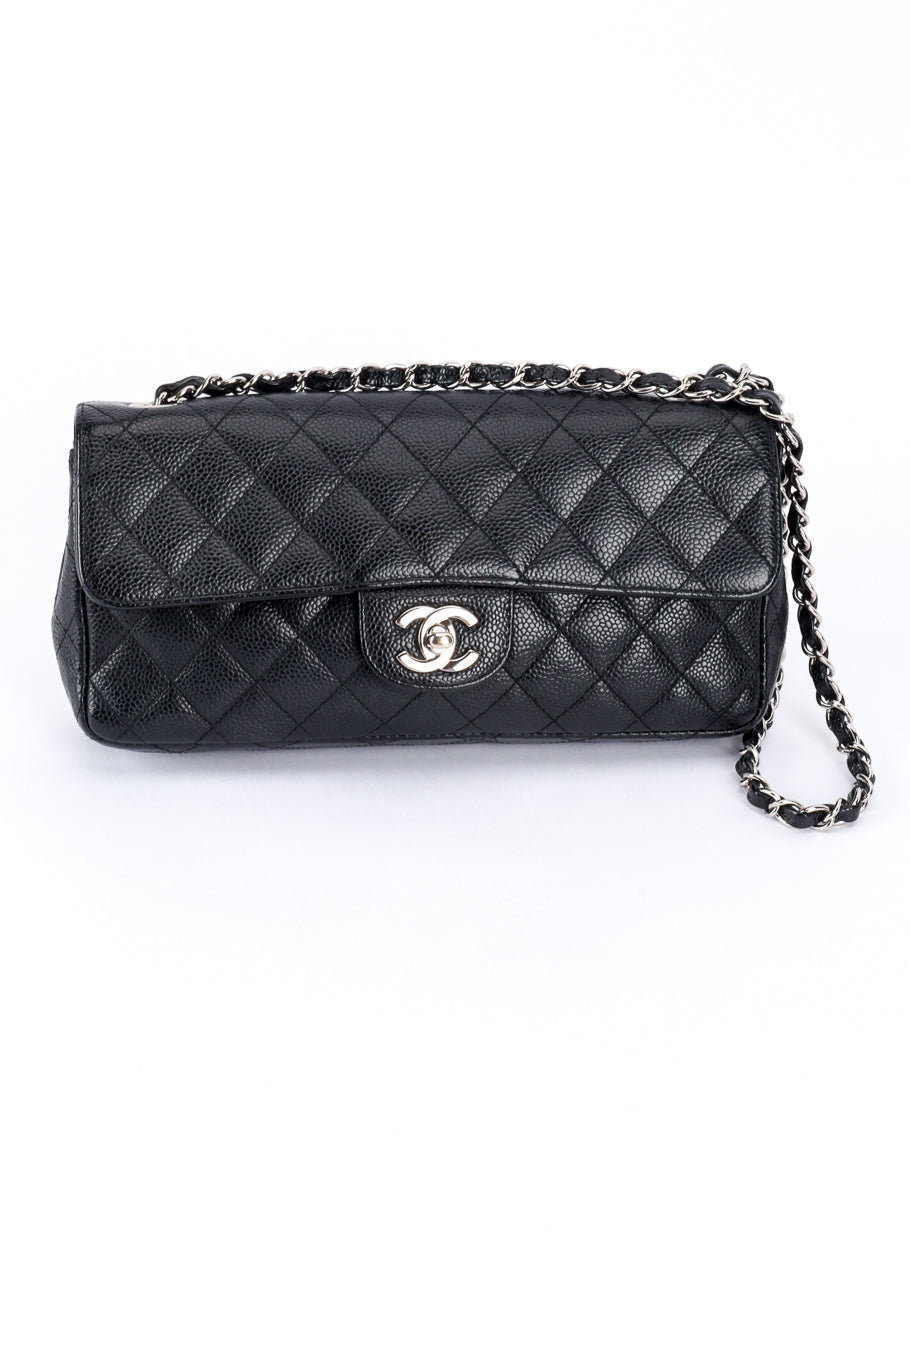 Chanel Classique Diamond Quilted Bag front @RECESS LA